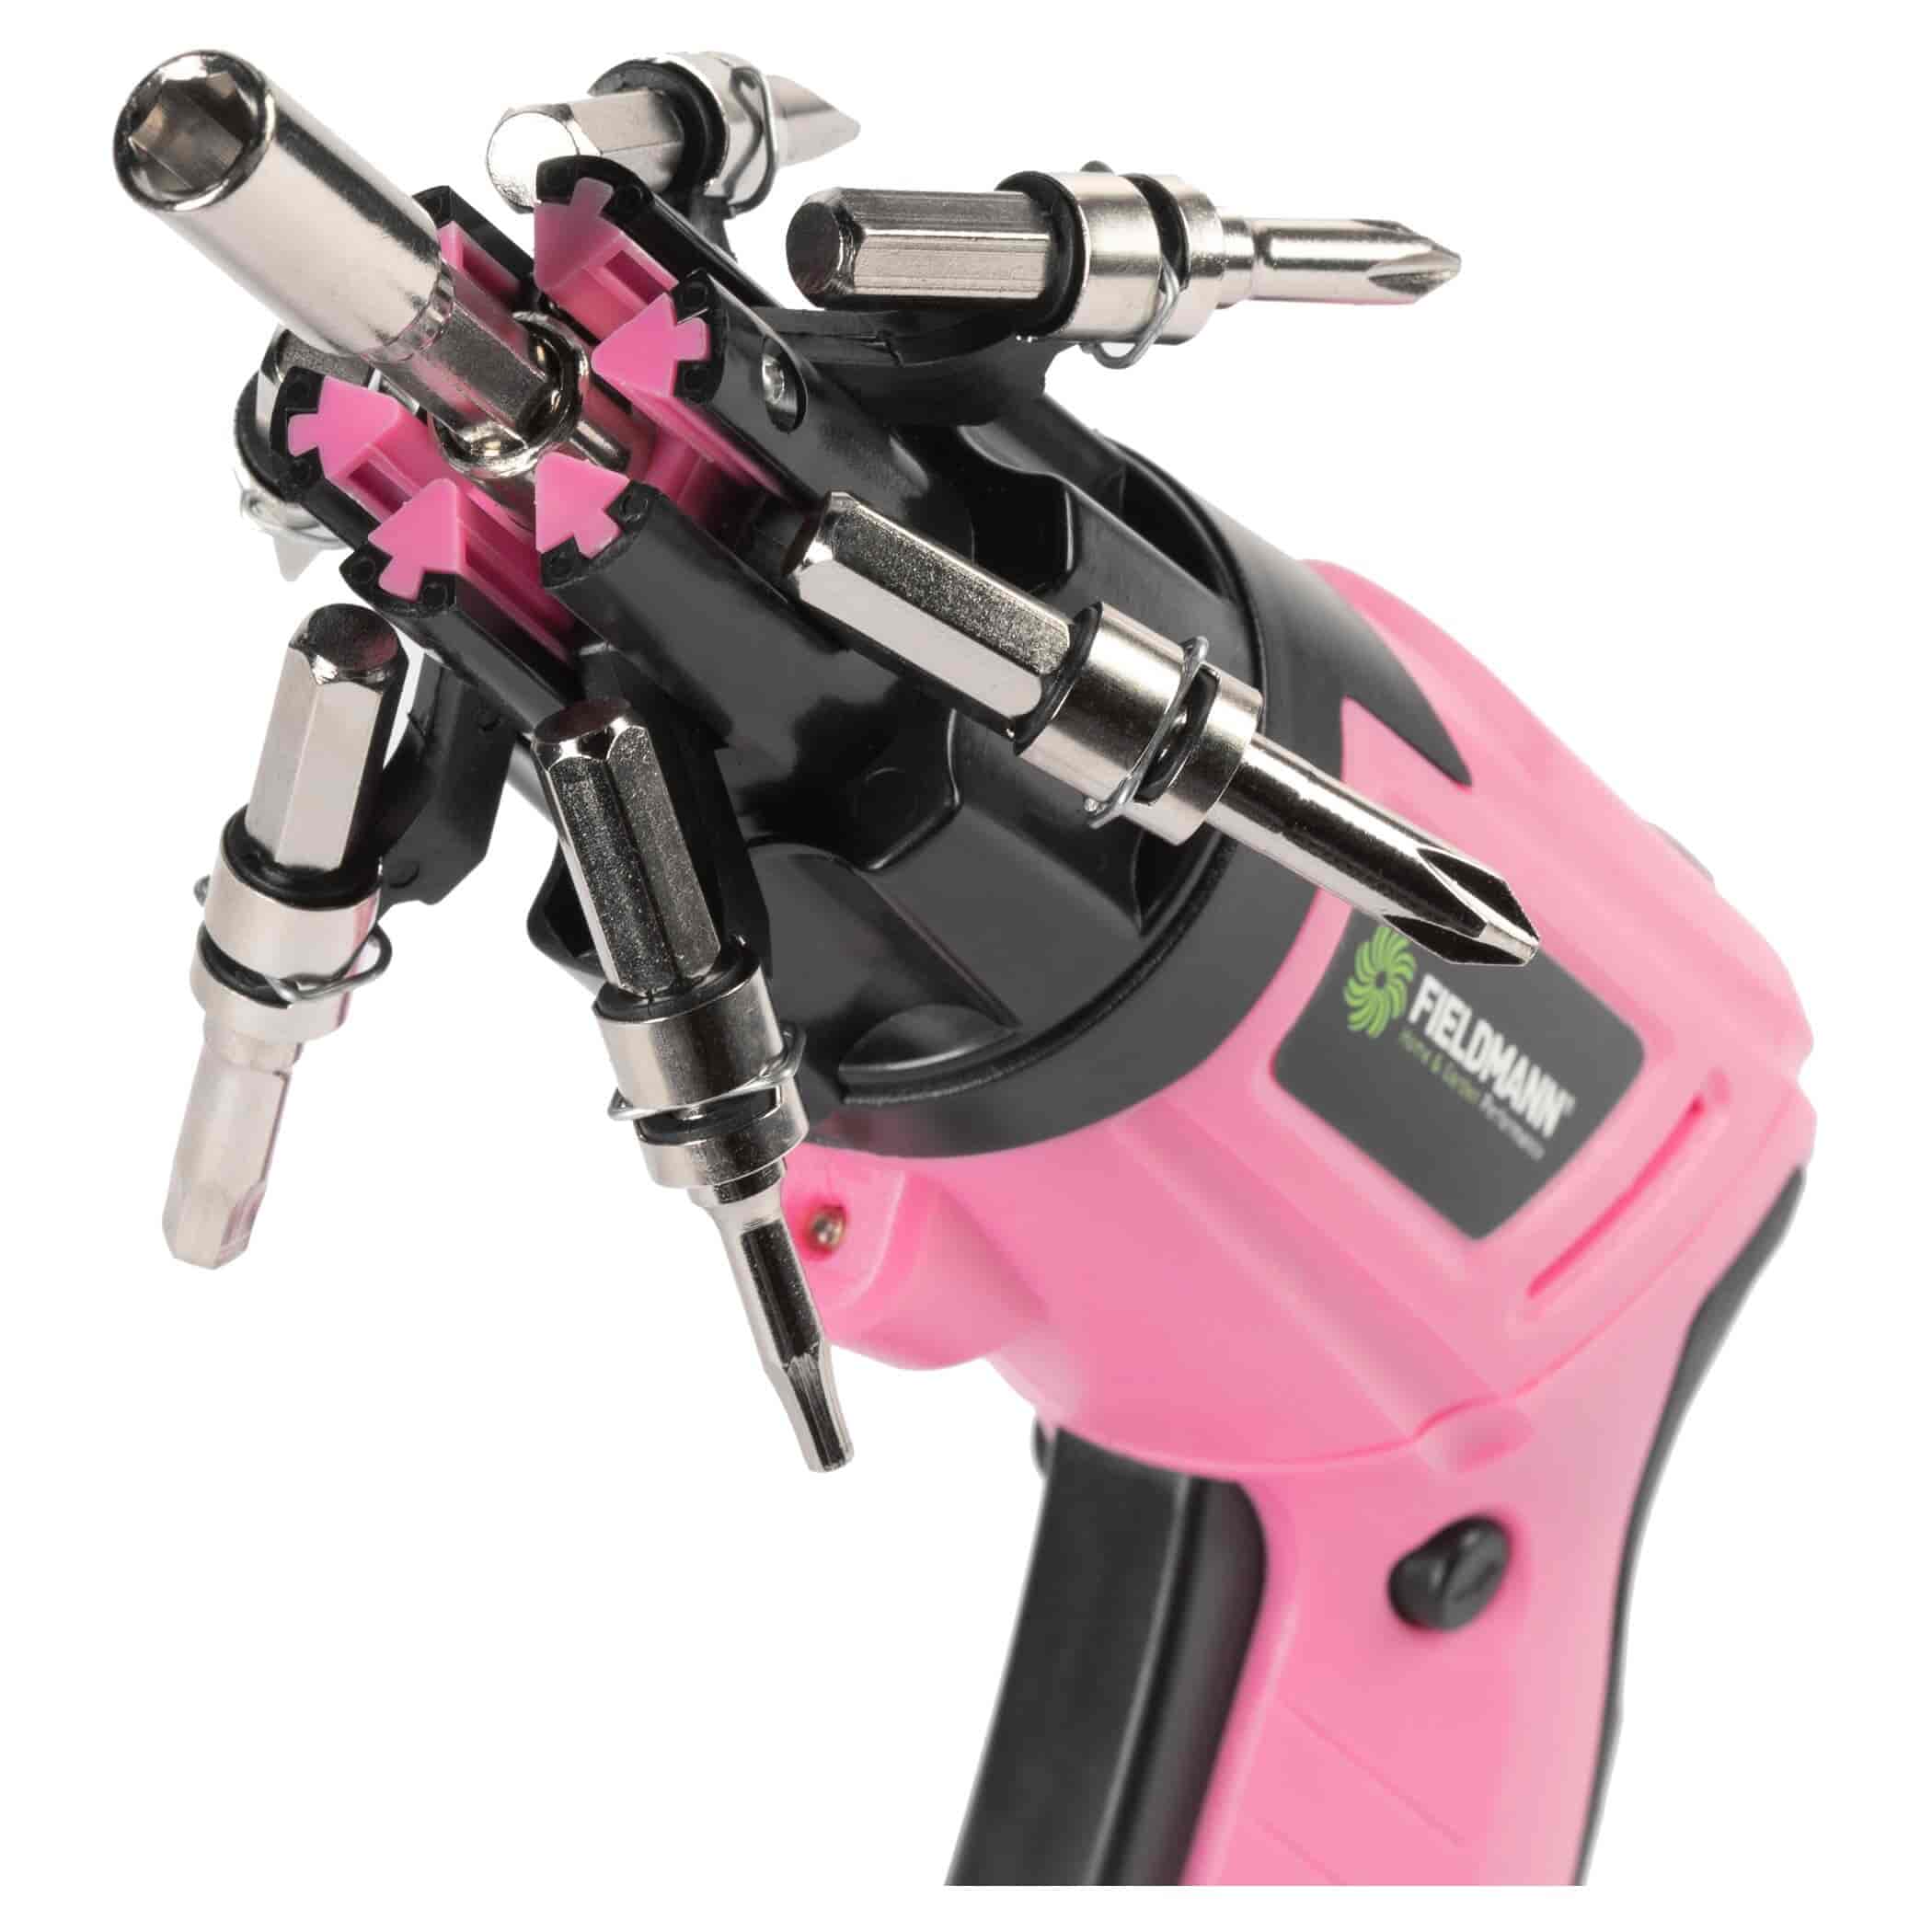 Skruemaskine pink FDS10112A akku 3.6VFieldmannSkruemaskiner - Akku Lyserød Oplev den ultimative kraft og lethed med en skruemaskine – din pålidelige partner i enhver "gør det selv" opgave! I en frisk og iøjnefaldende pink farve er denne skruemaskine ikke kun et kraftværktøj, det er også en statement-piece til din værktøjskasse. Uanset om det er montering af møbler, reparationer eller andre gør det selv opgaver, er denne skruemaskine din pålidelige partner.